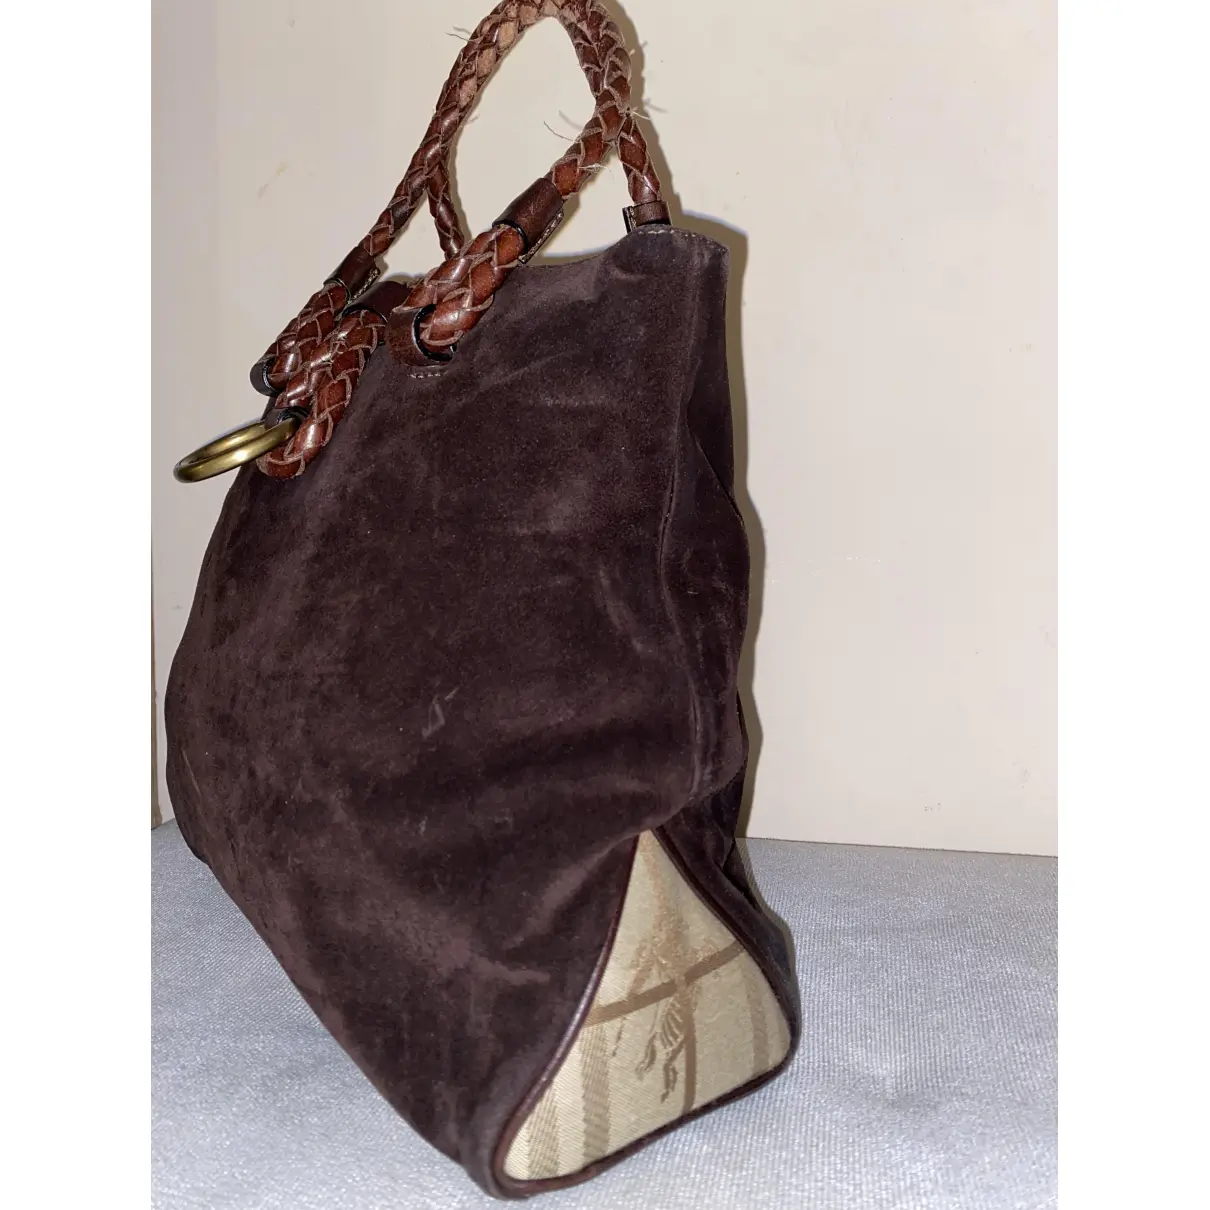 Buy Burberry Handbag online